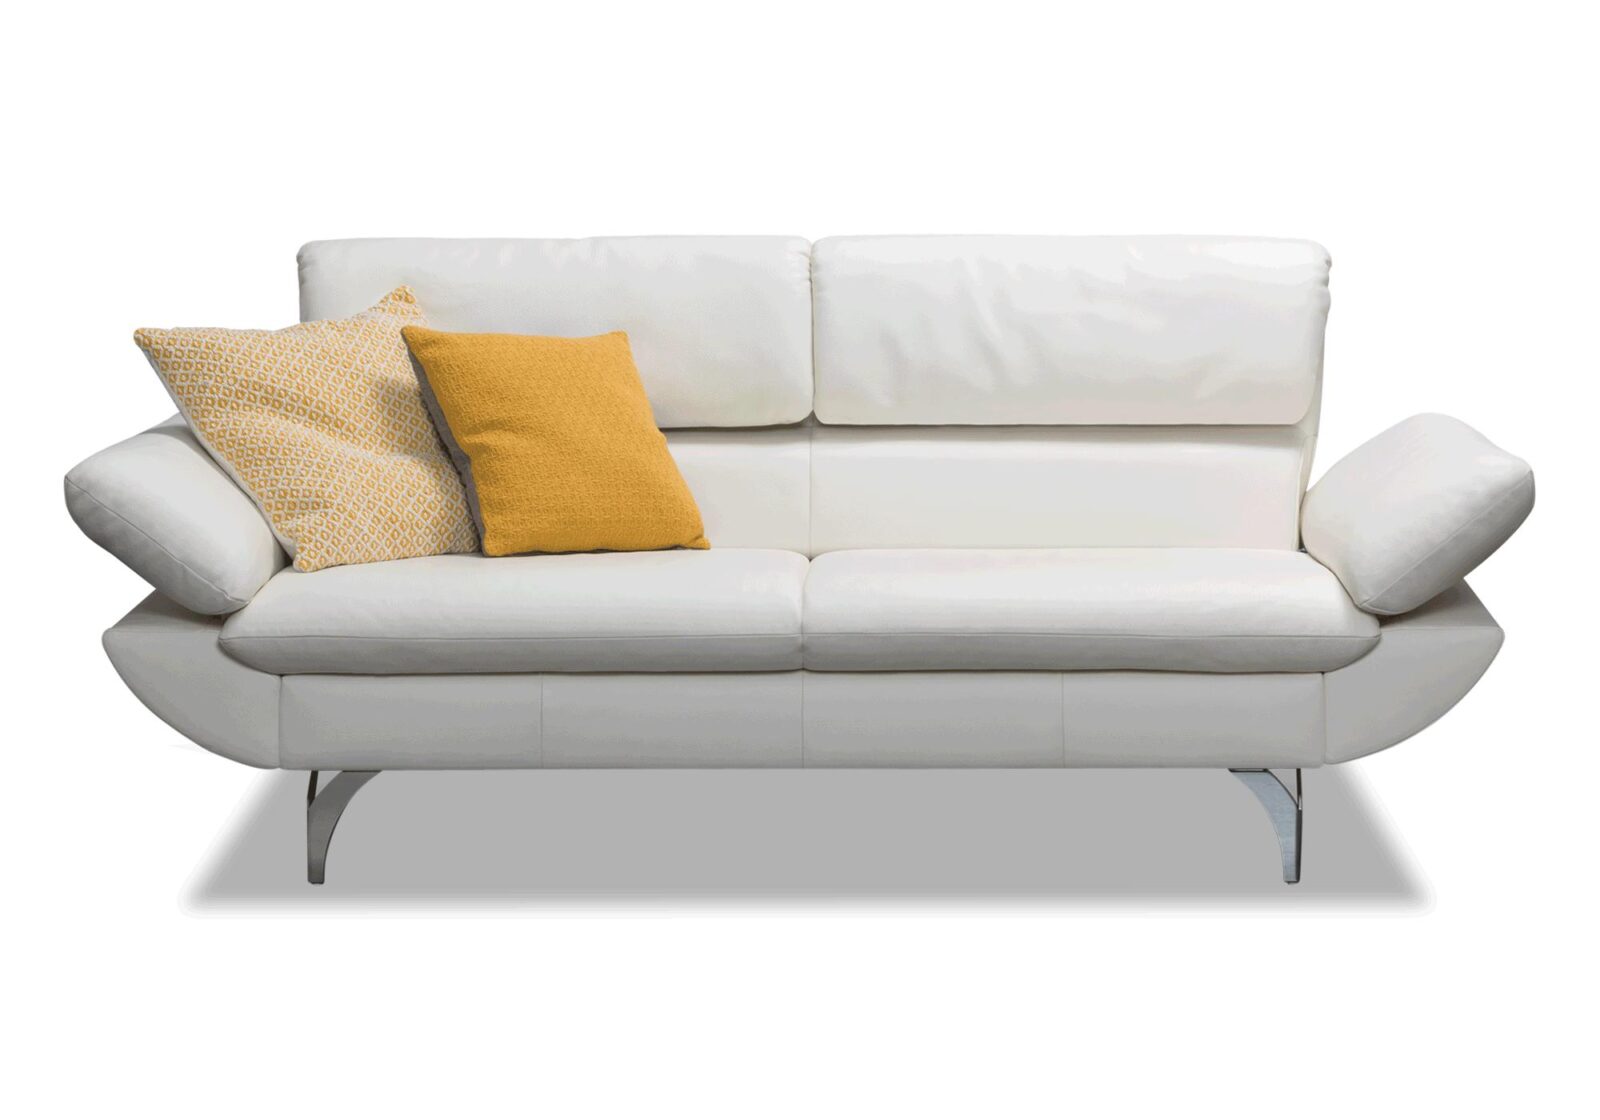 Sofa Malix  verstellbare Arm und Rückenlehnen. Bezug: Leder. Farbe: Weiss. Erhältlich bei Möbel Gallati.